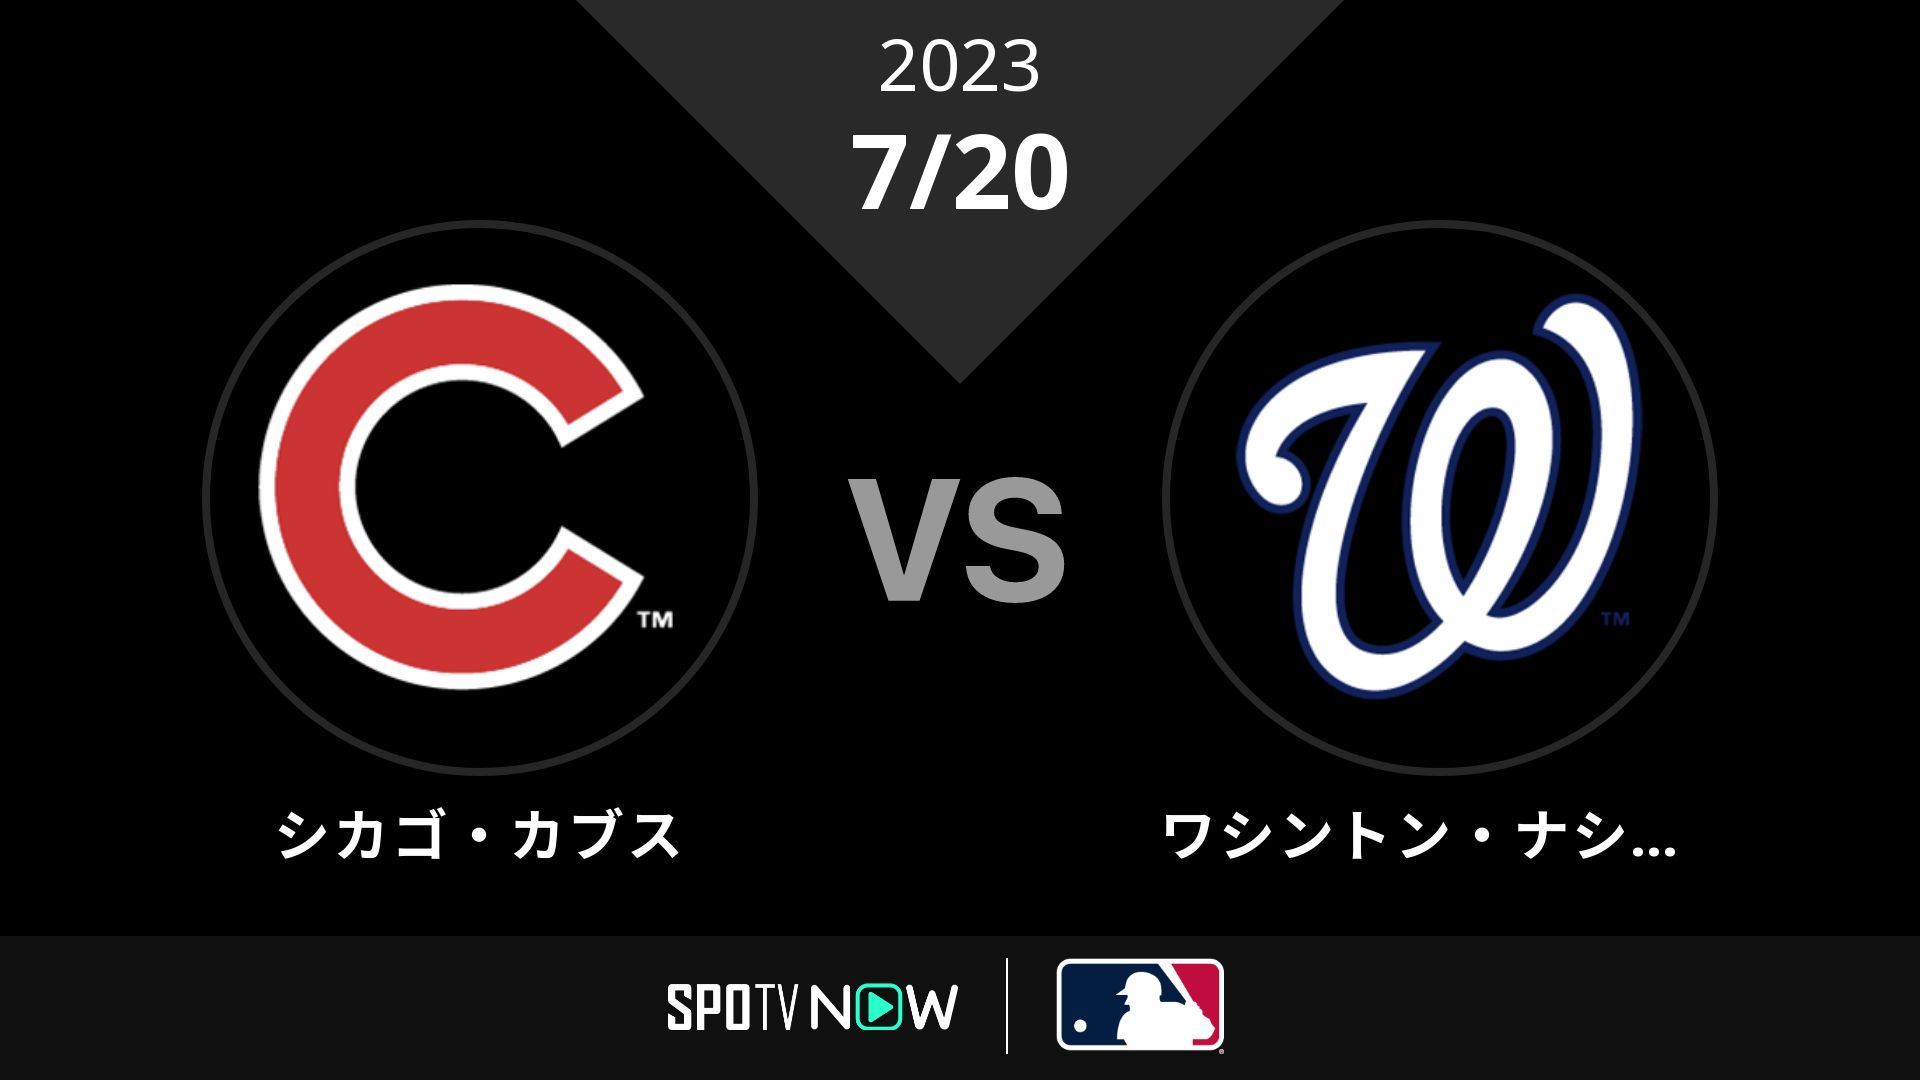 2023/7/20 カブス vs ナショナルズ [MLB]